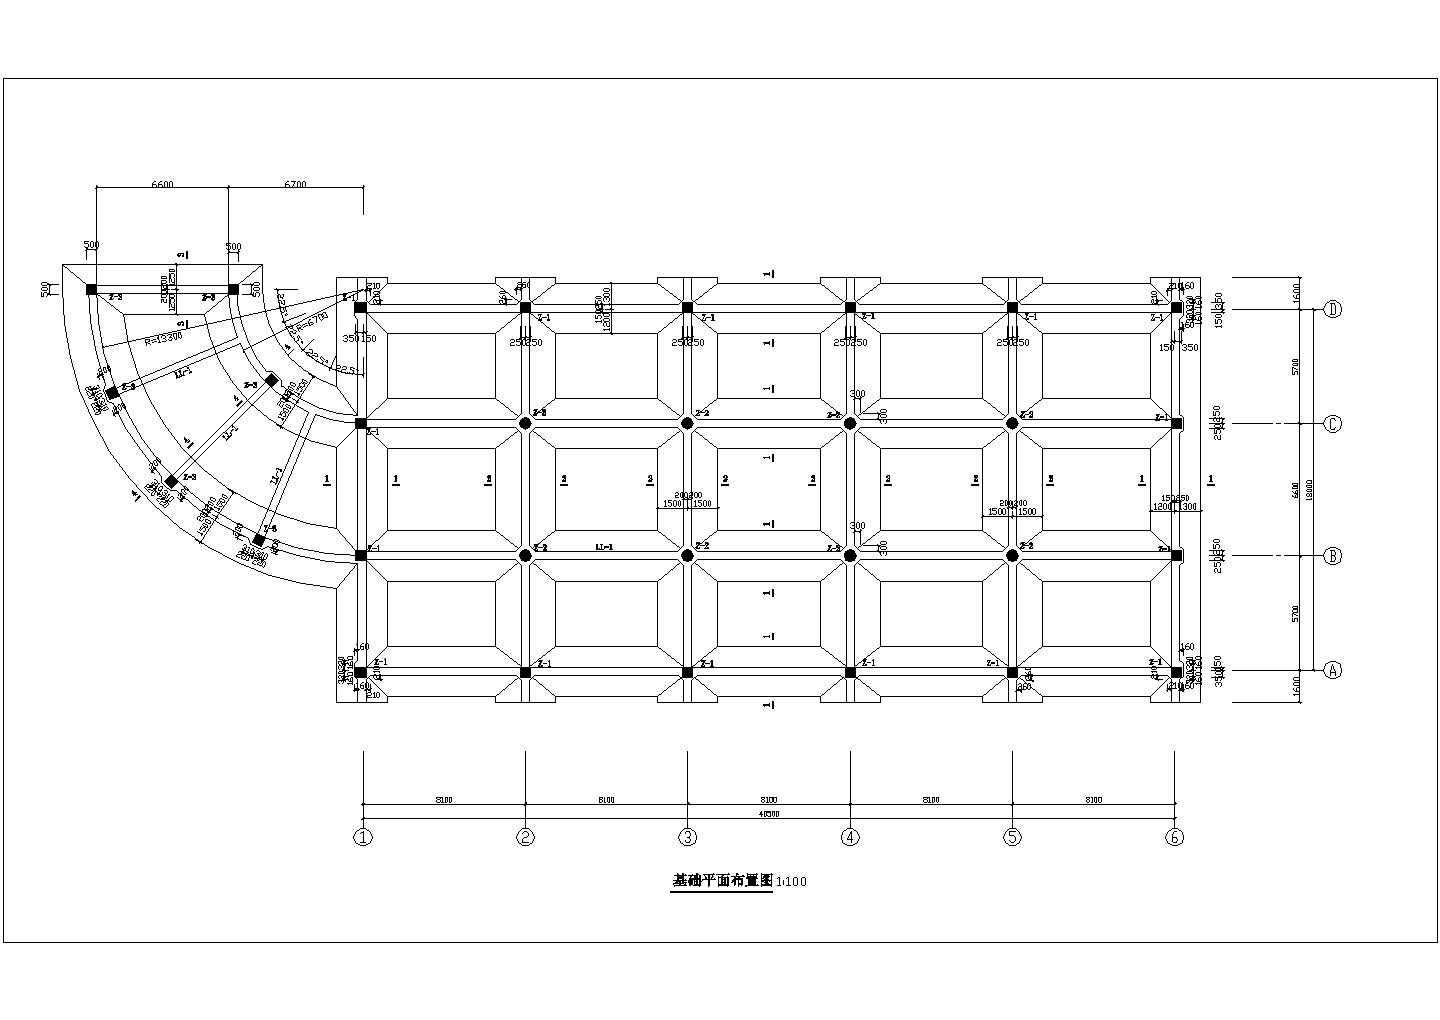 嘉兴市某公园单层管理房整体结构设计CAD图纸